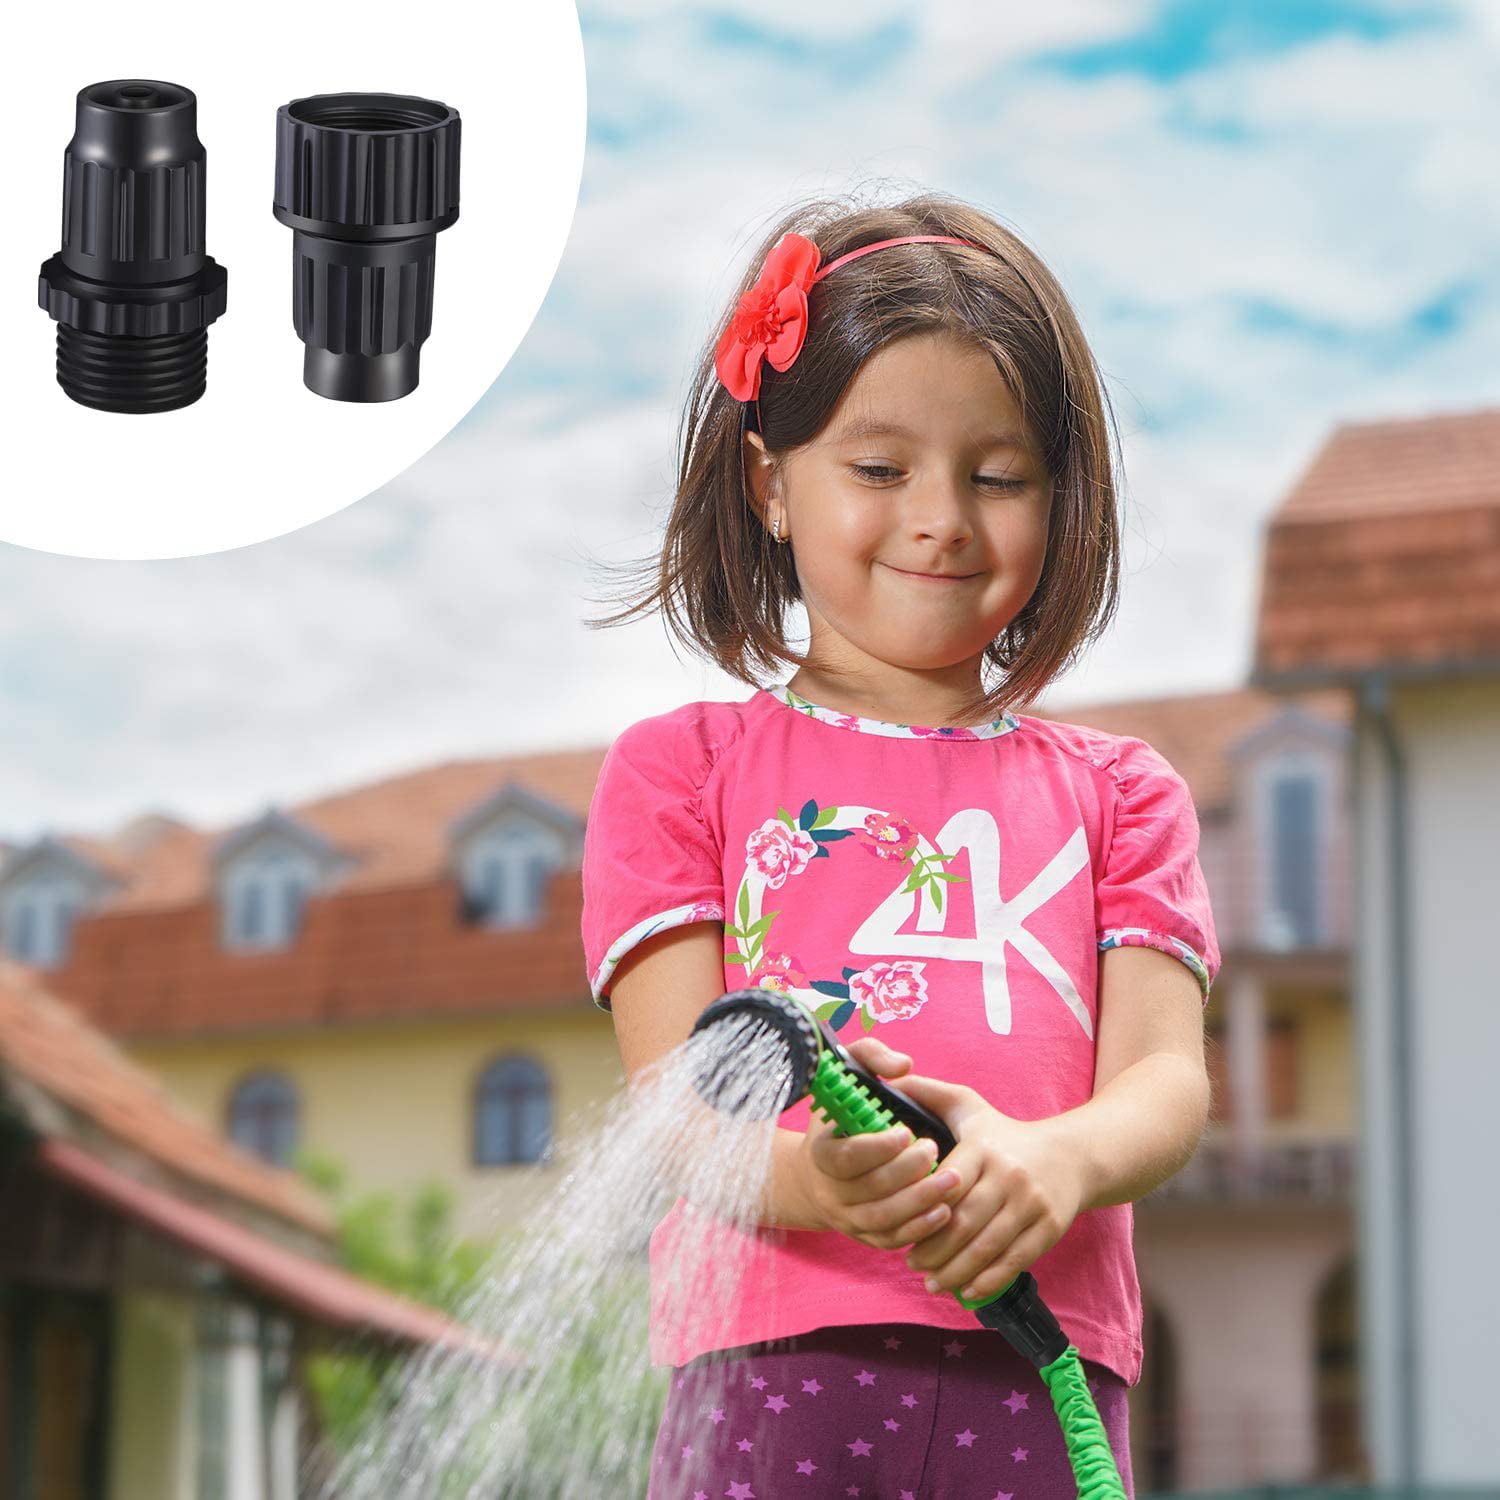 Details about   4 Sets Garden Expandable Hose Repair Kit Plastic Faucet Adapter Rubber Gaskets 